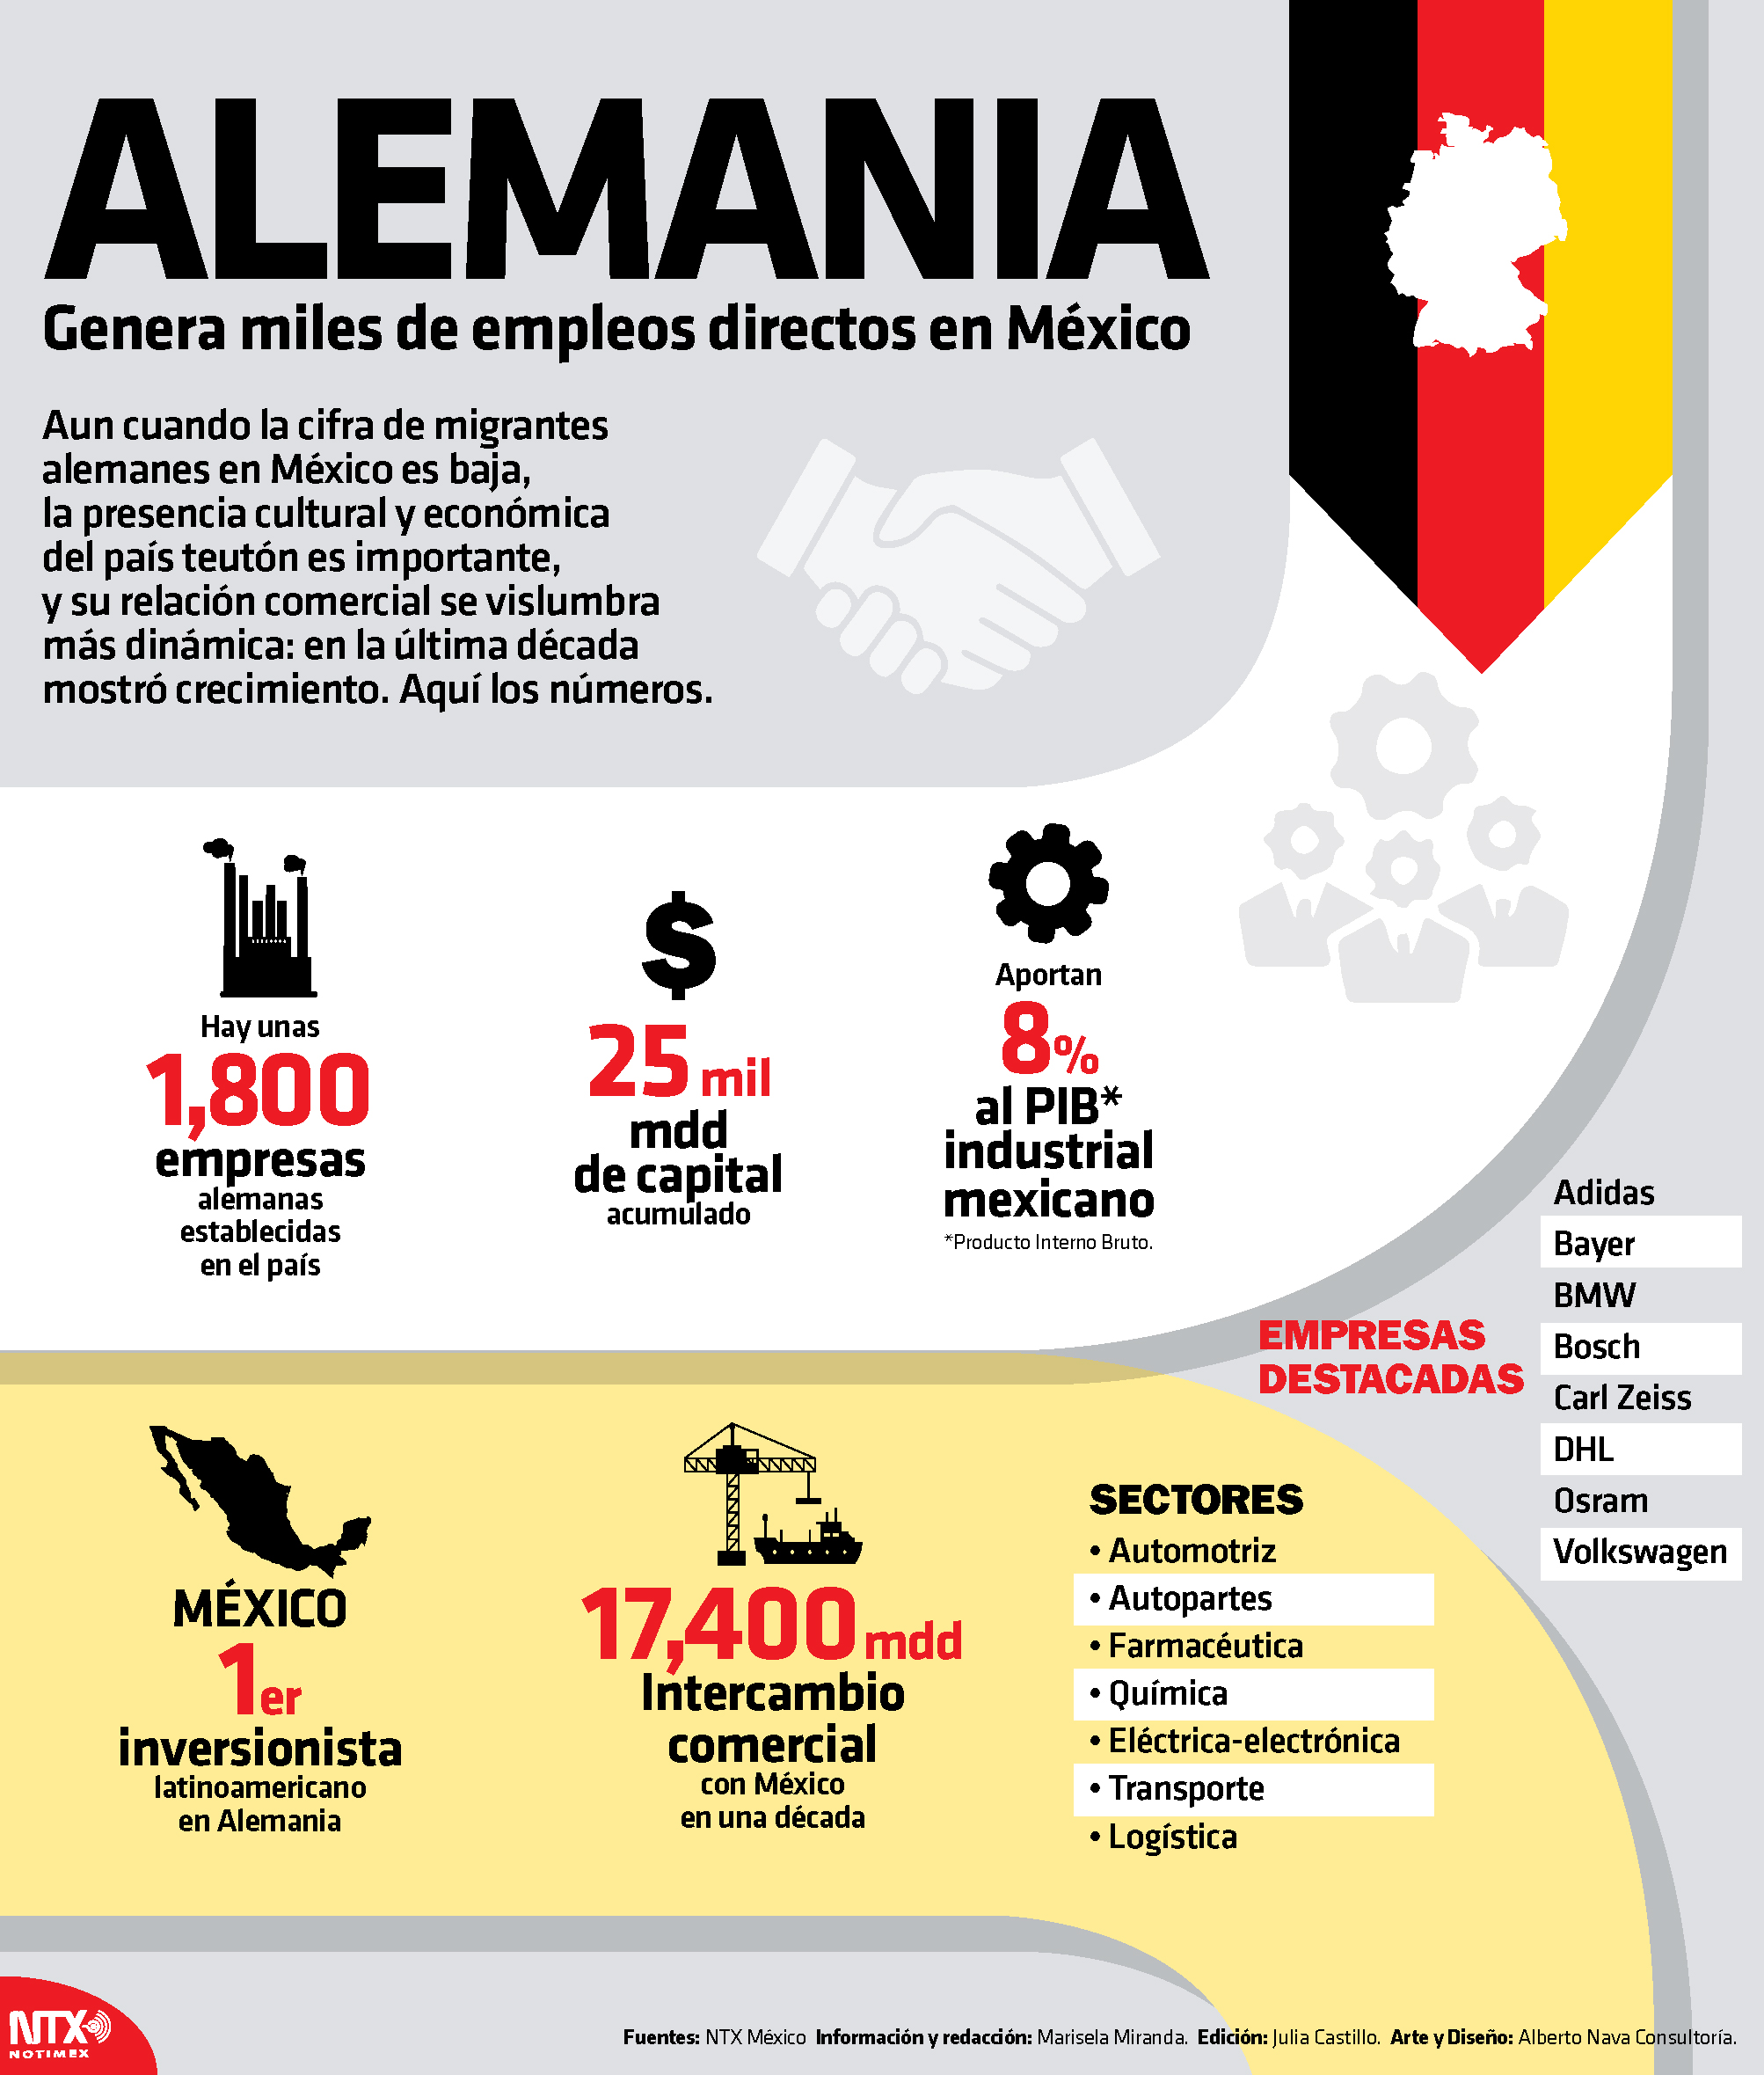 Alemania genera miles de empleos directos a México